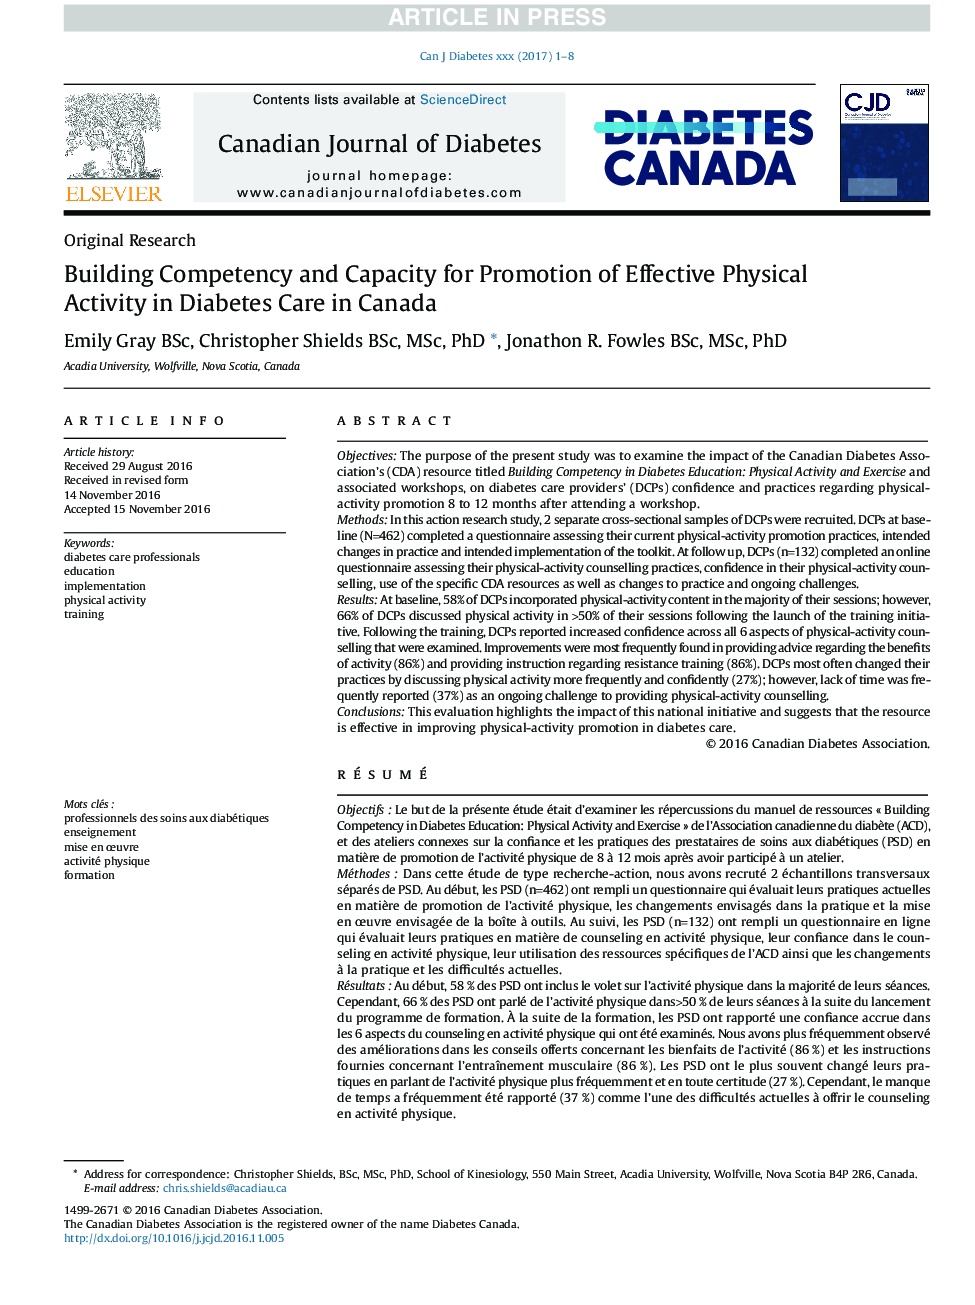 صلاحیت و ظرفیت سازی برای ارتقای فعالیت فیزیکی مؤثر در مراقبت از دیابت در کانادا 